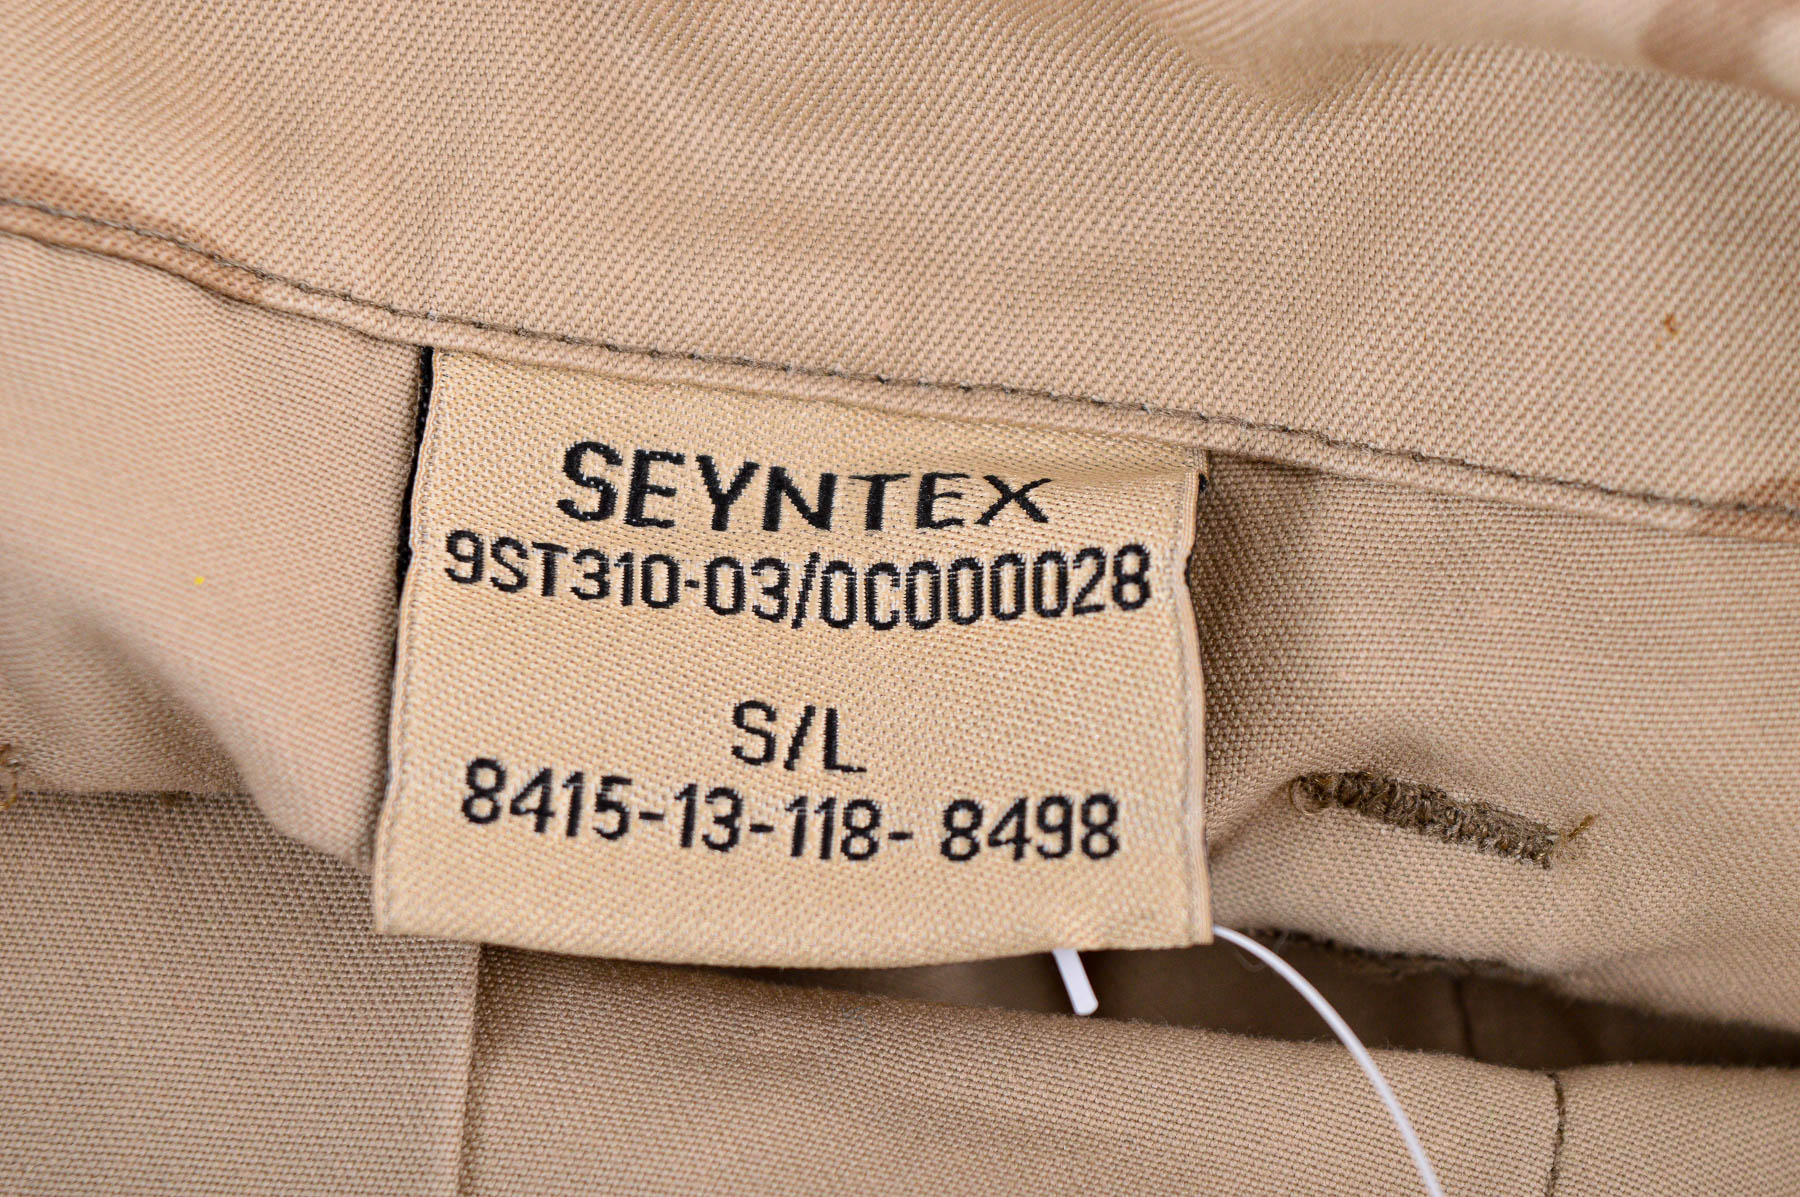 Men's trousers - Seyntex - 2